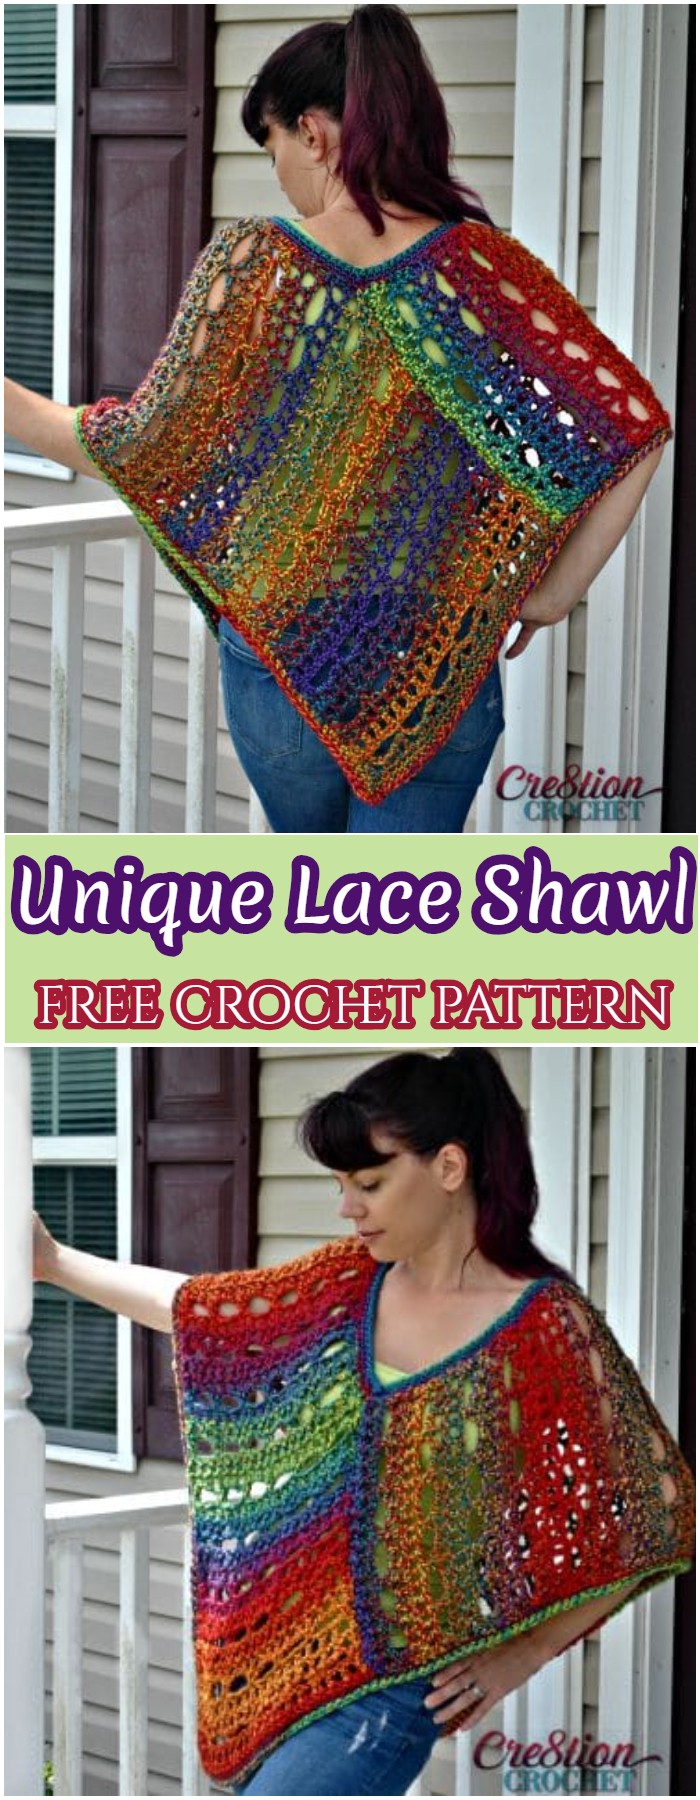 Crochet Unique Lace Shawl